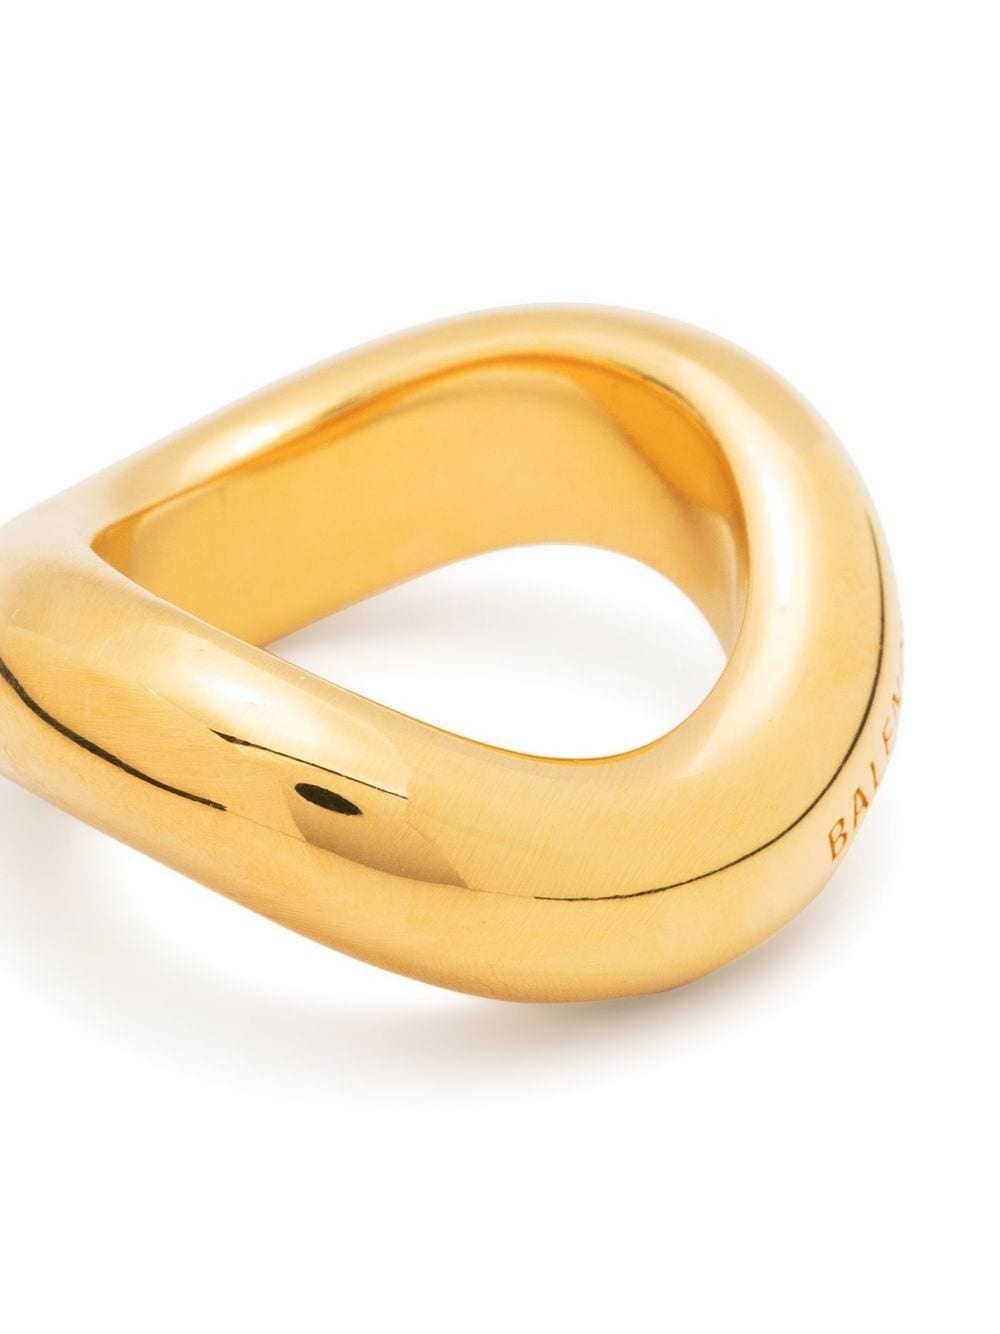 Loop engraved ring - 3